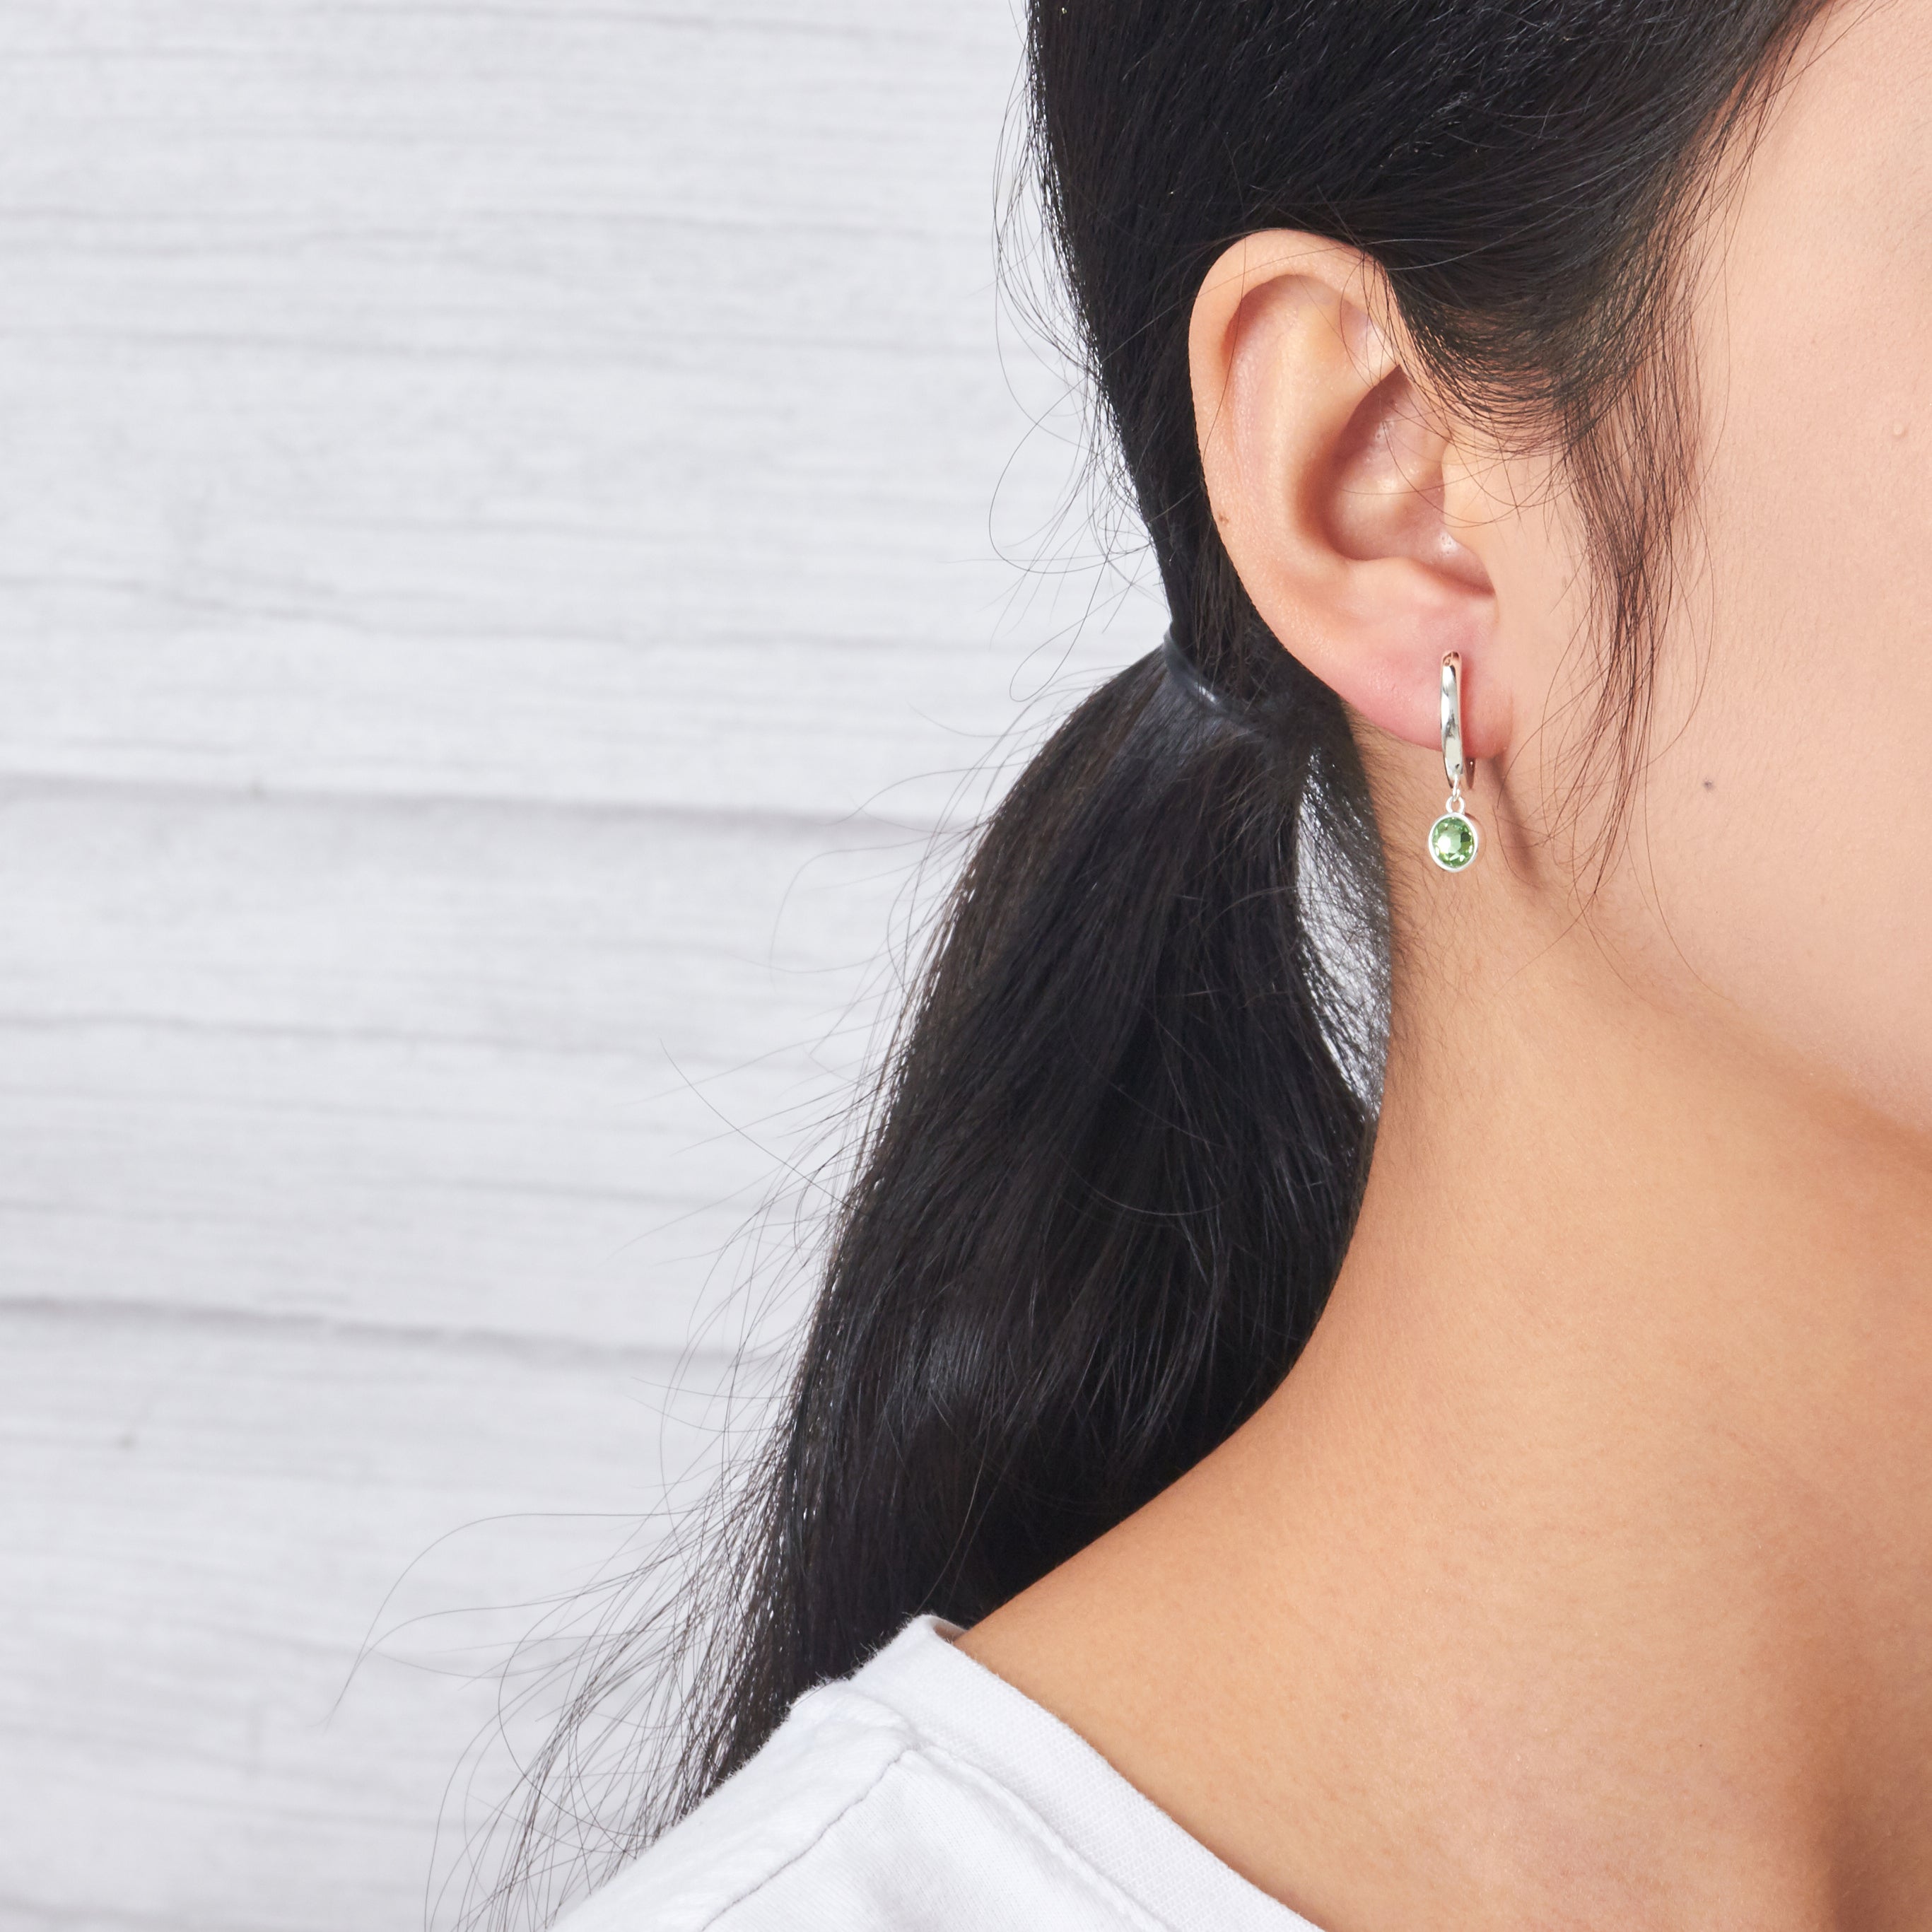 August Birthstone Hoop Earrings Created with Peridot Zircondia® Crystals